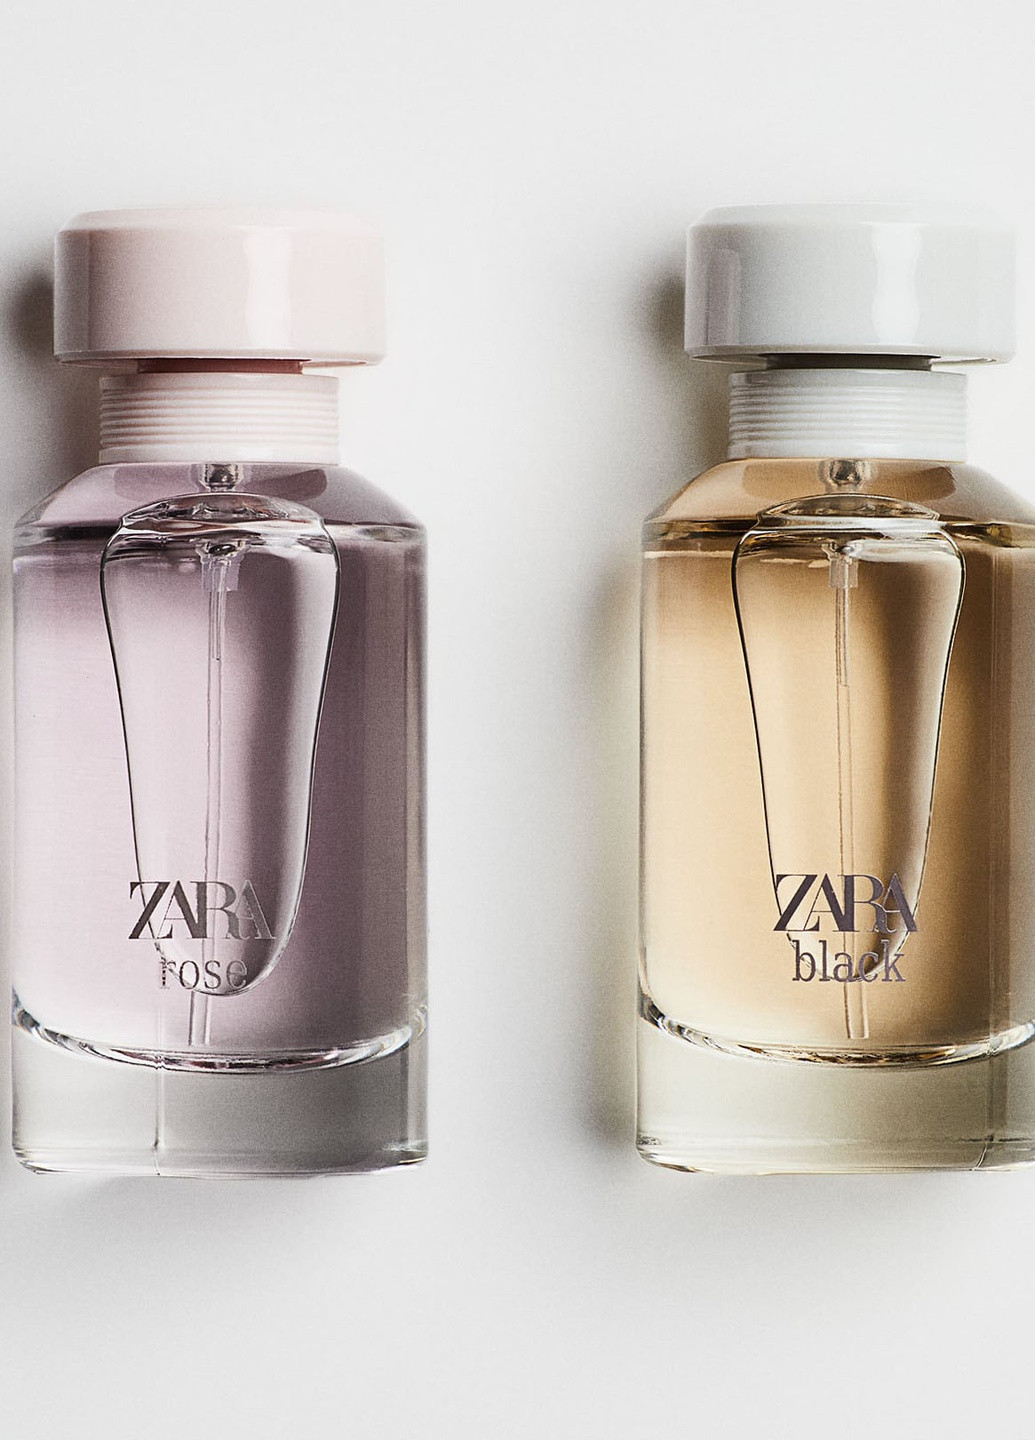 Женская туалетная вода, 100 мл - Фруктовый аромат, женские духи, парфюмерия Zara black + rose (252661965)